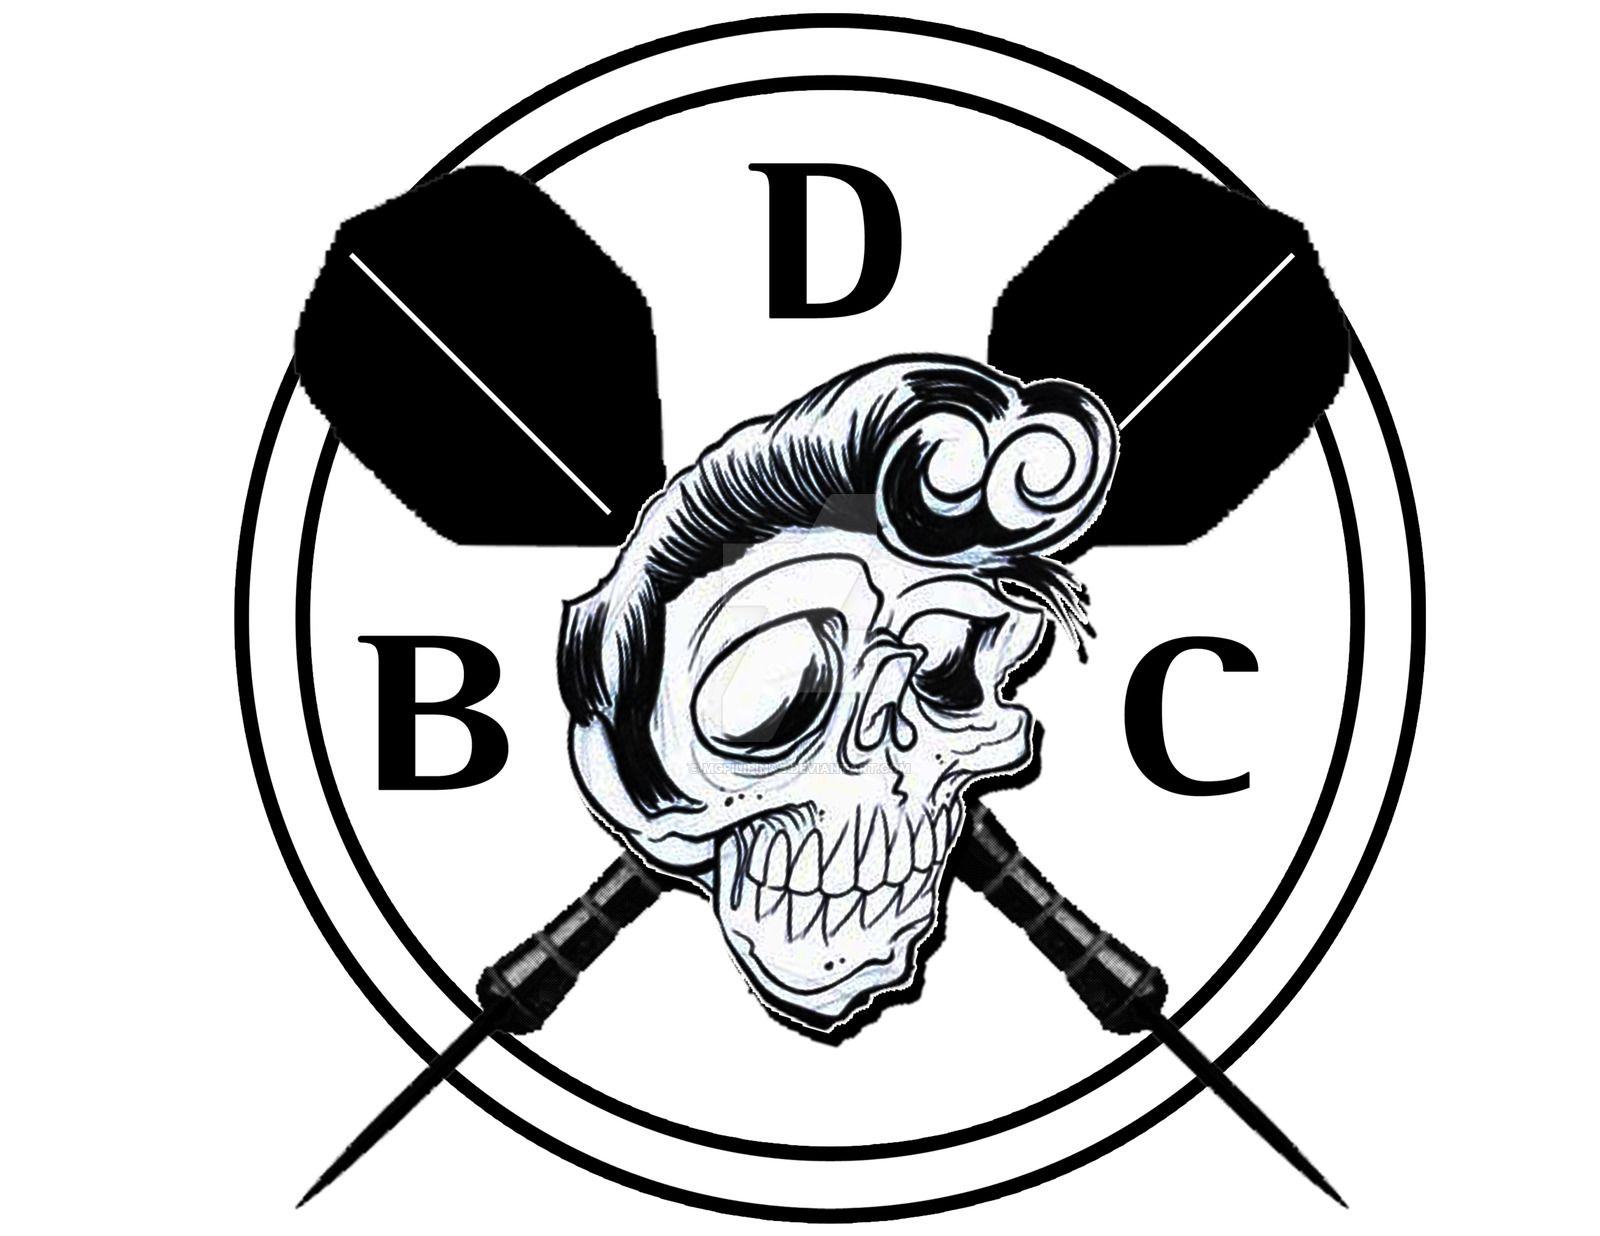 BDC Logo - BDC logo by mgpilipinas on DeviantArt